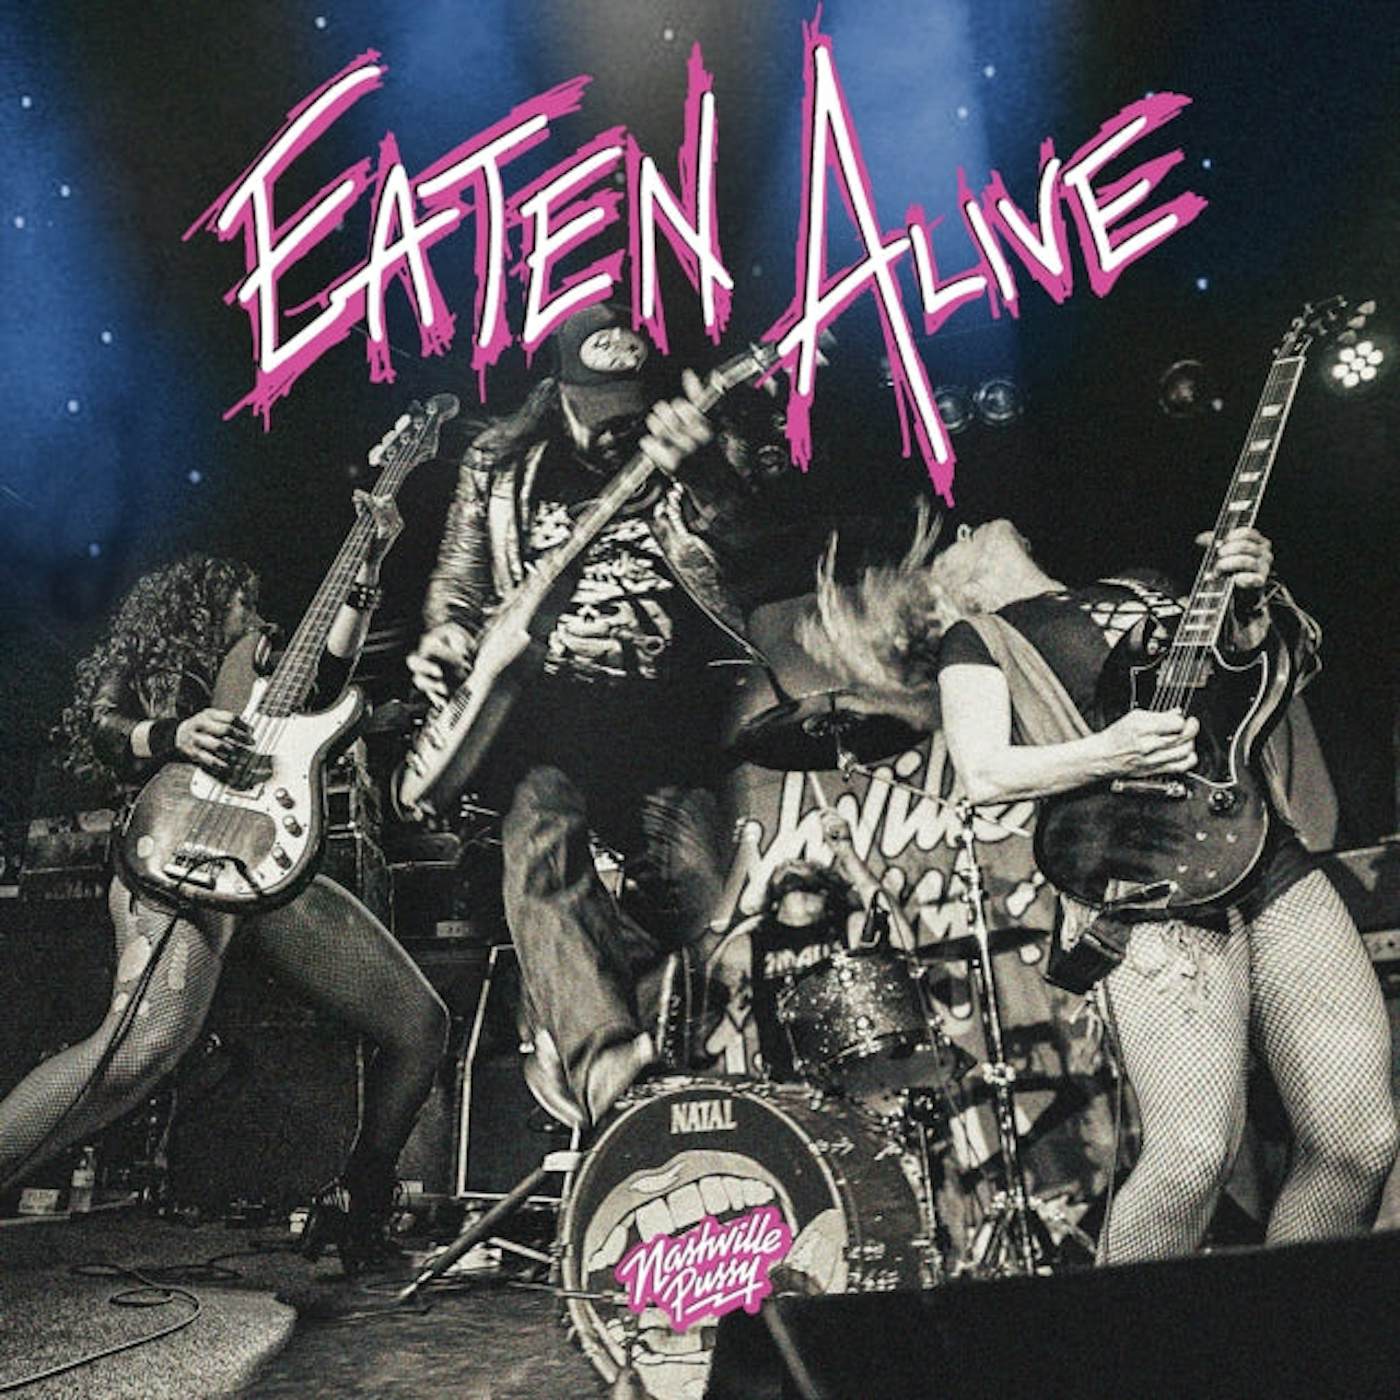 Nashville Pussy LP - Eaten Alive (2lp) (Vinyl)